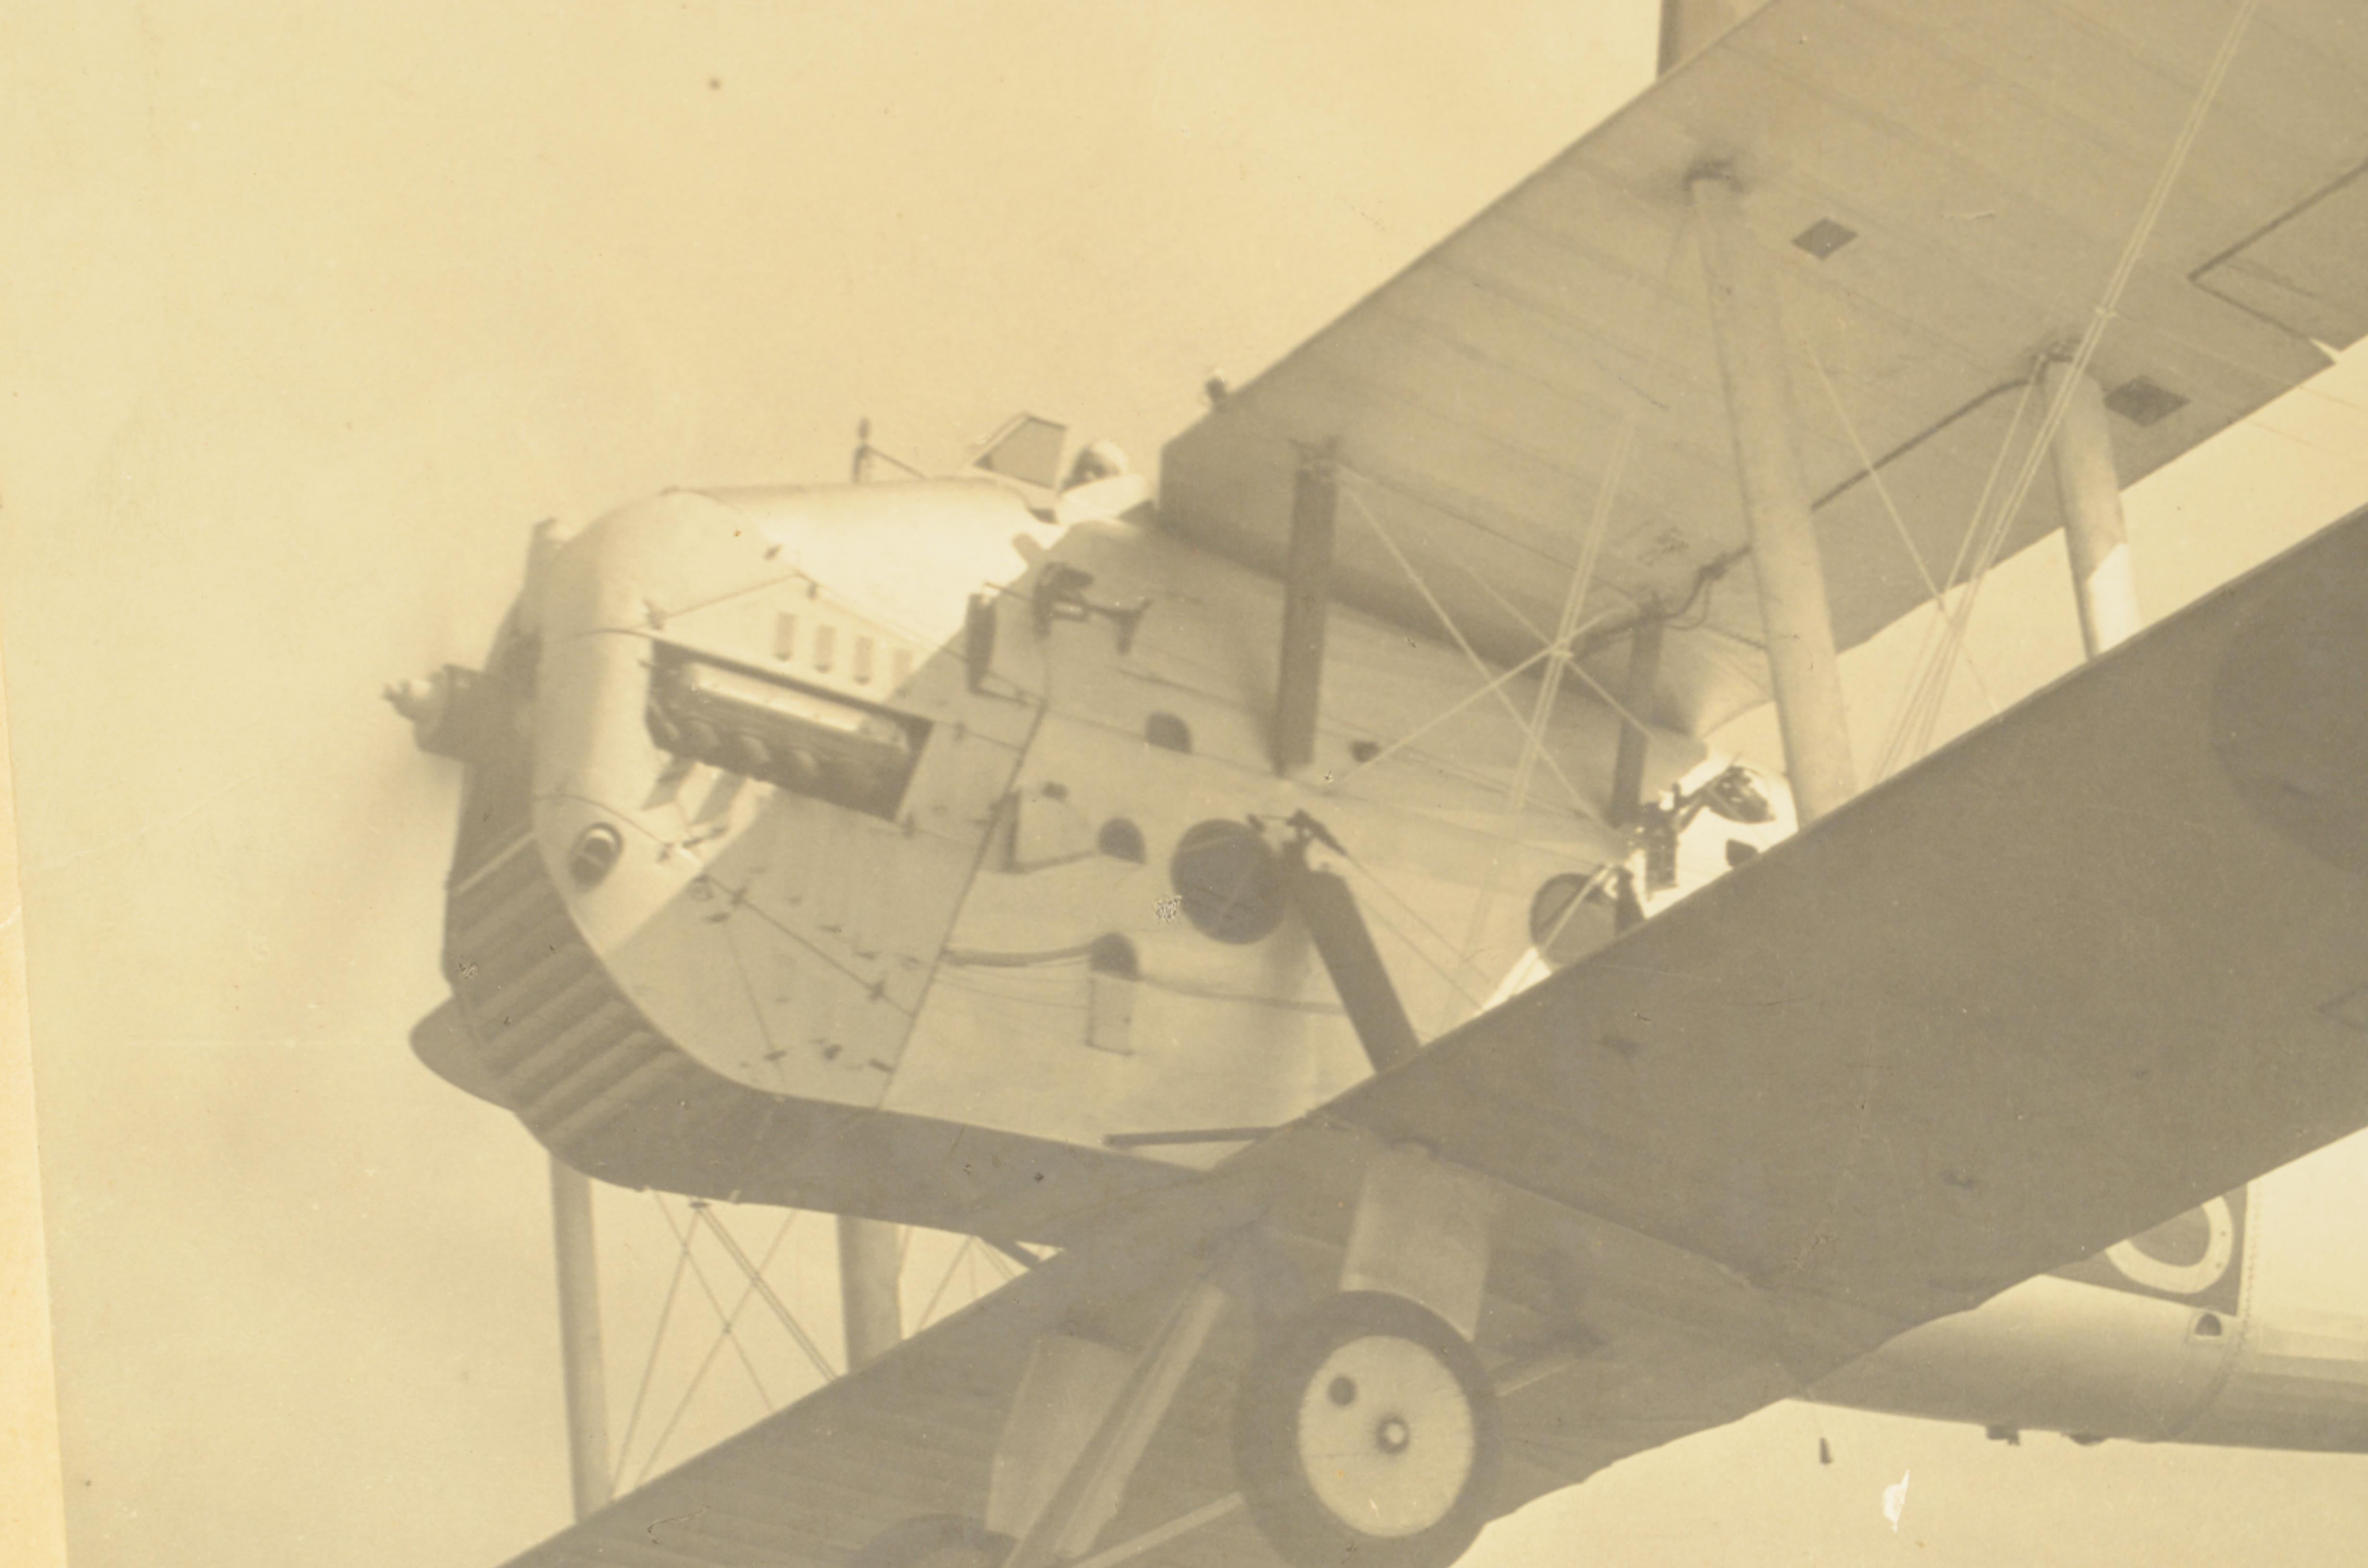 Historisches Foto auf Karton, das die Blackburn R-1 Blackburn im Flug zeigt. 
Guter Zustand. Der Karton ist 37,5 x 30 cm groß.  
Die Blackburn R-1 Blackburn war ein einmotoriges britisches Aufklärungsflugzeug der 1920er Jahre, das von Blackburn